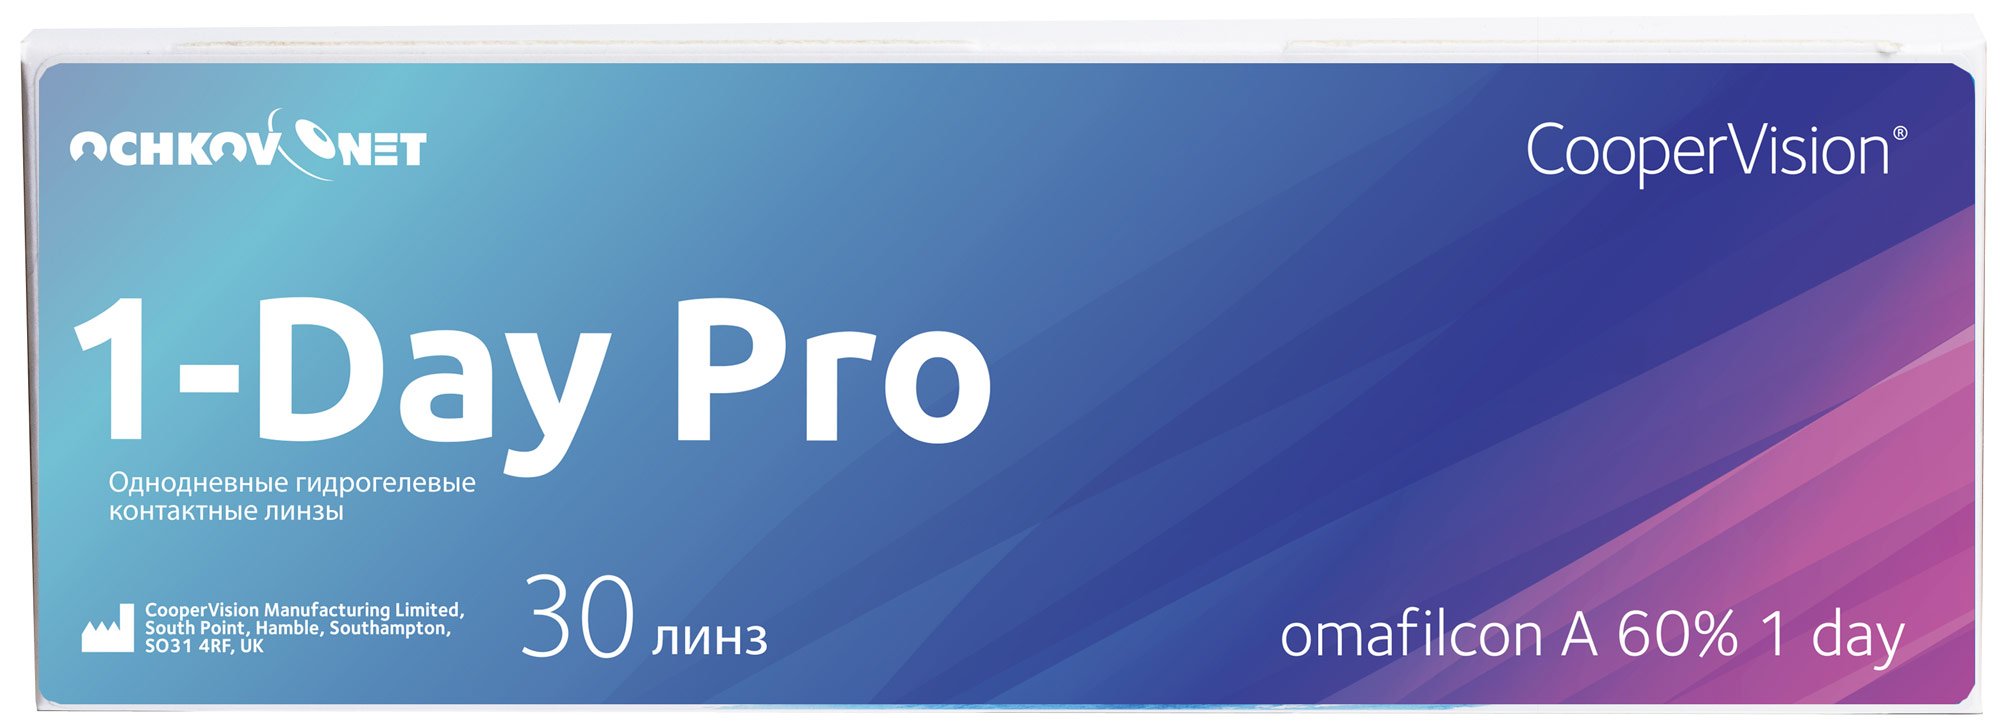 Купить Контактные линзы Ochkov.Net 1-Day Pro 30 линз 8.7, -2